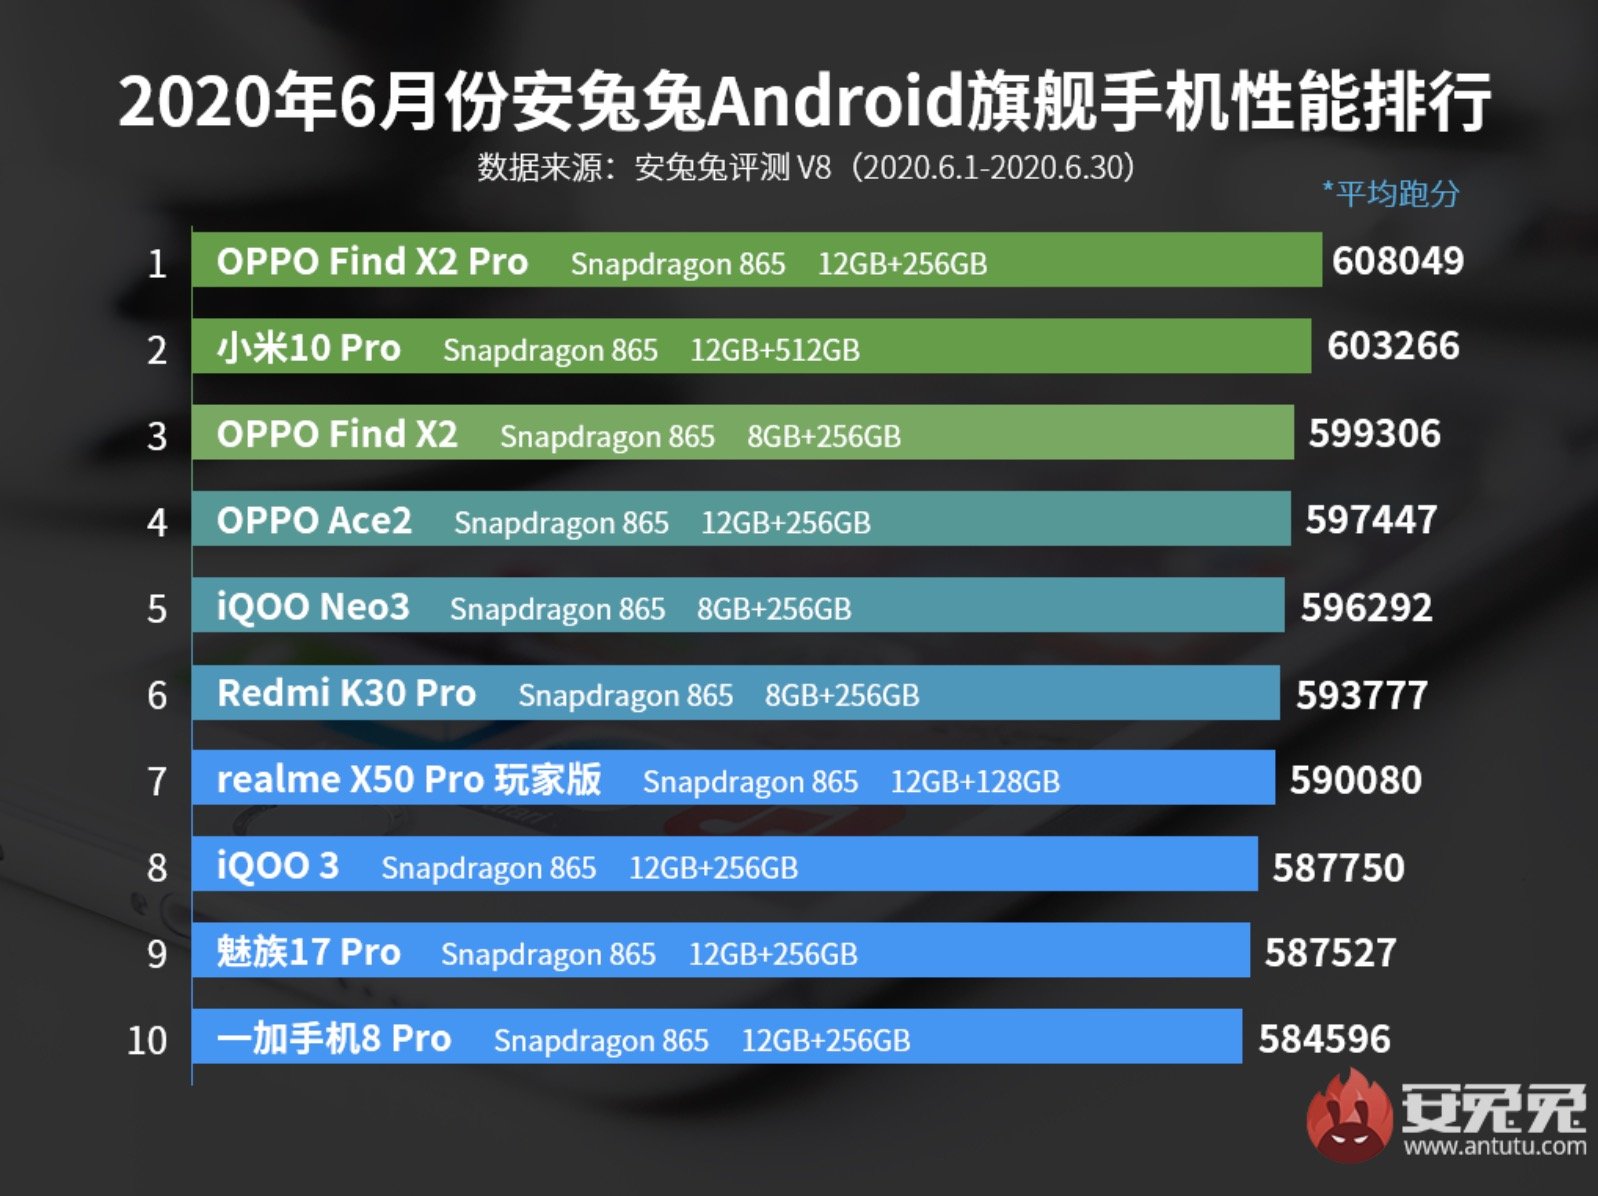 Lista de smartphones Android mais potentes do AnTuTu no mês de junho.